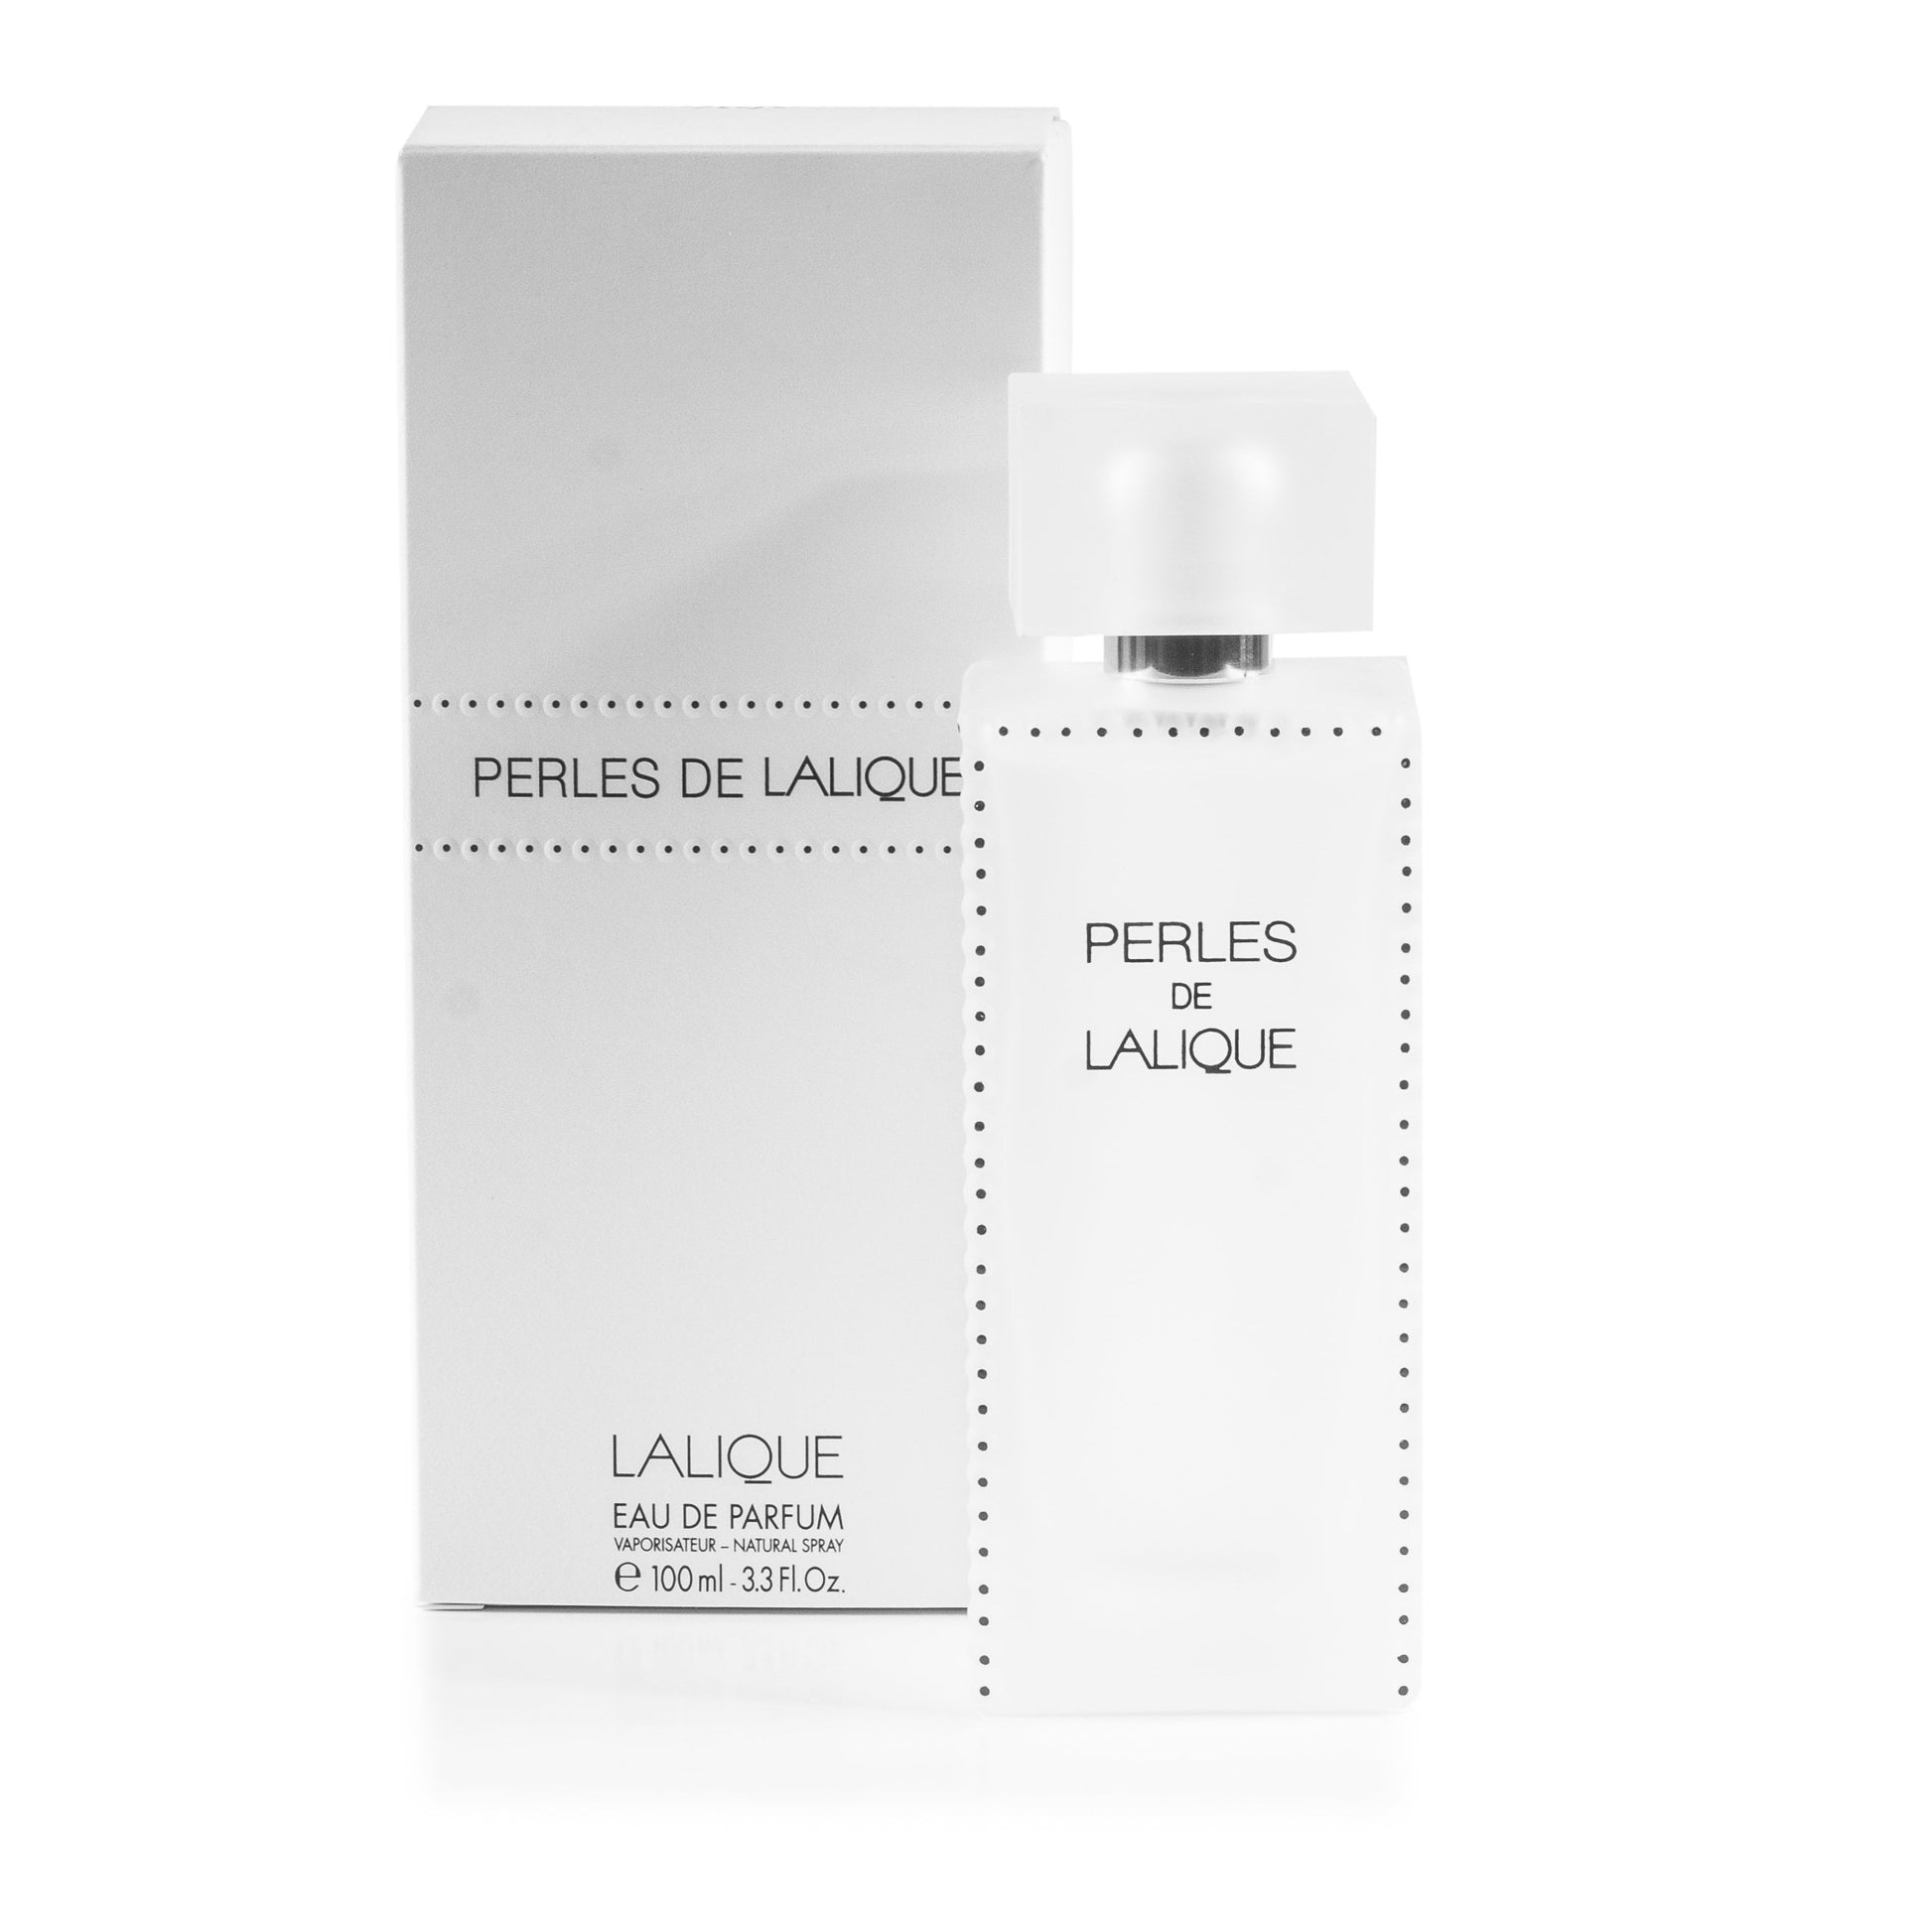 Perles de Lalique Eau de Parfum Spray for Women by Lalique, Product image 1